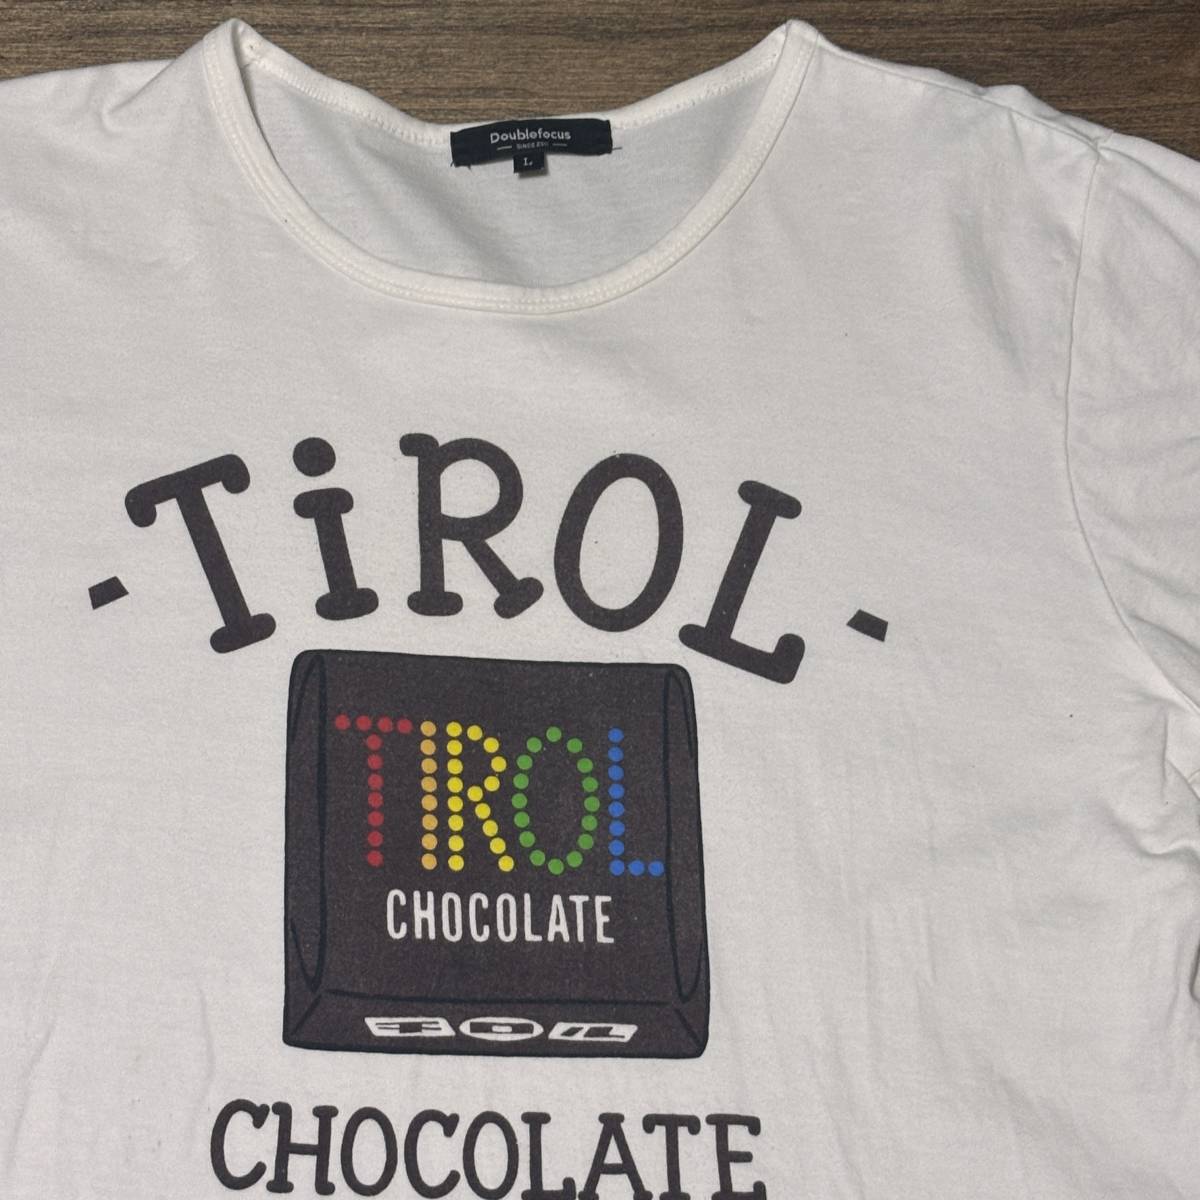 *(Doublefocus)chiroru chocolate T-shirt Tirol-Choco shirt